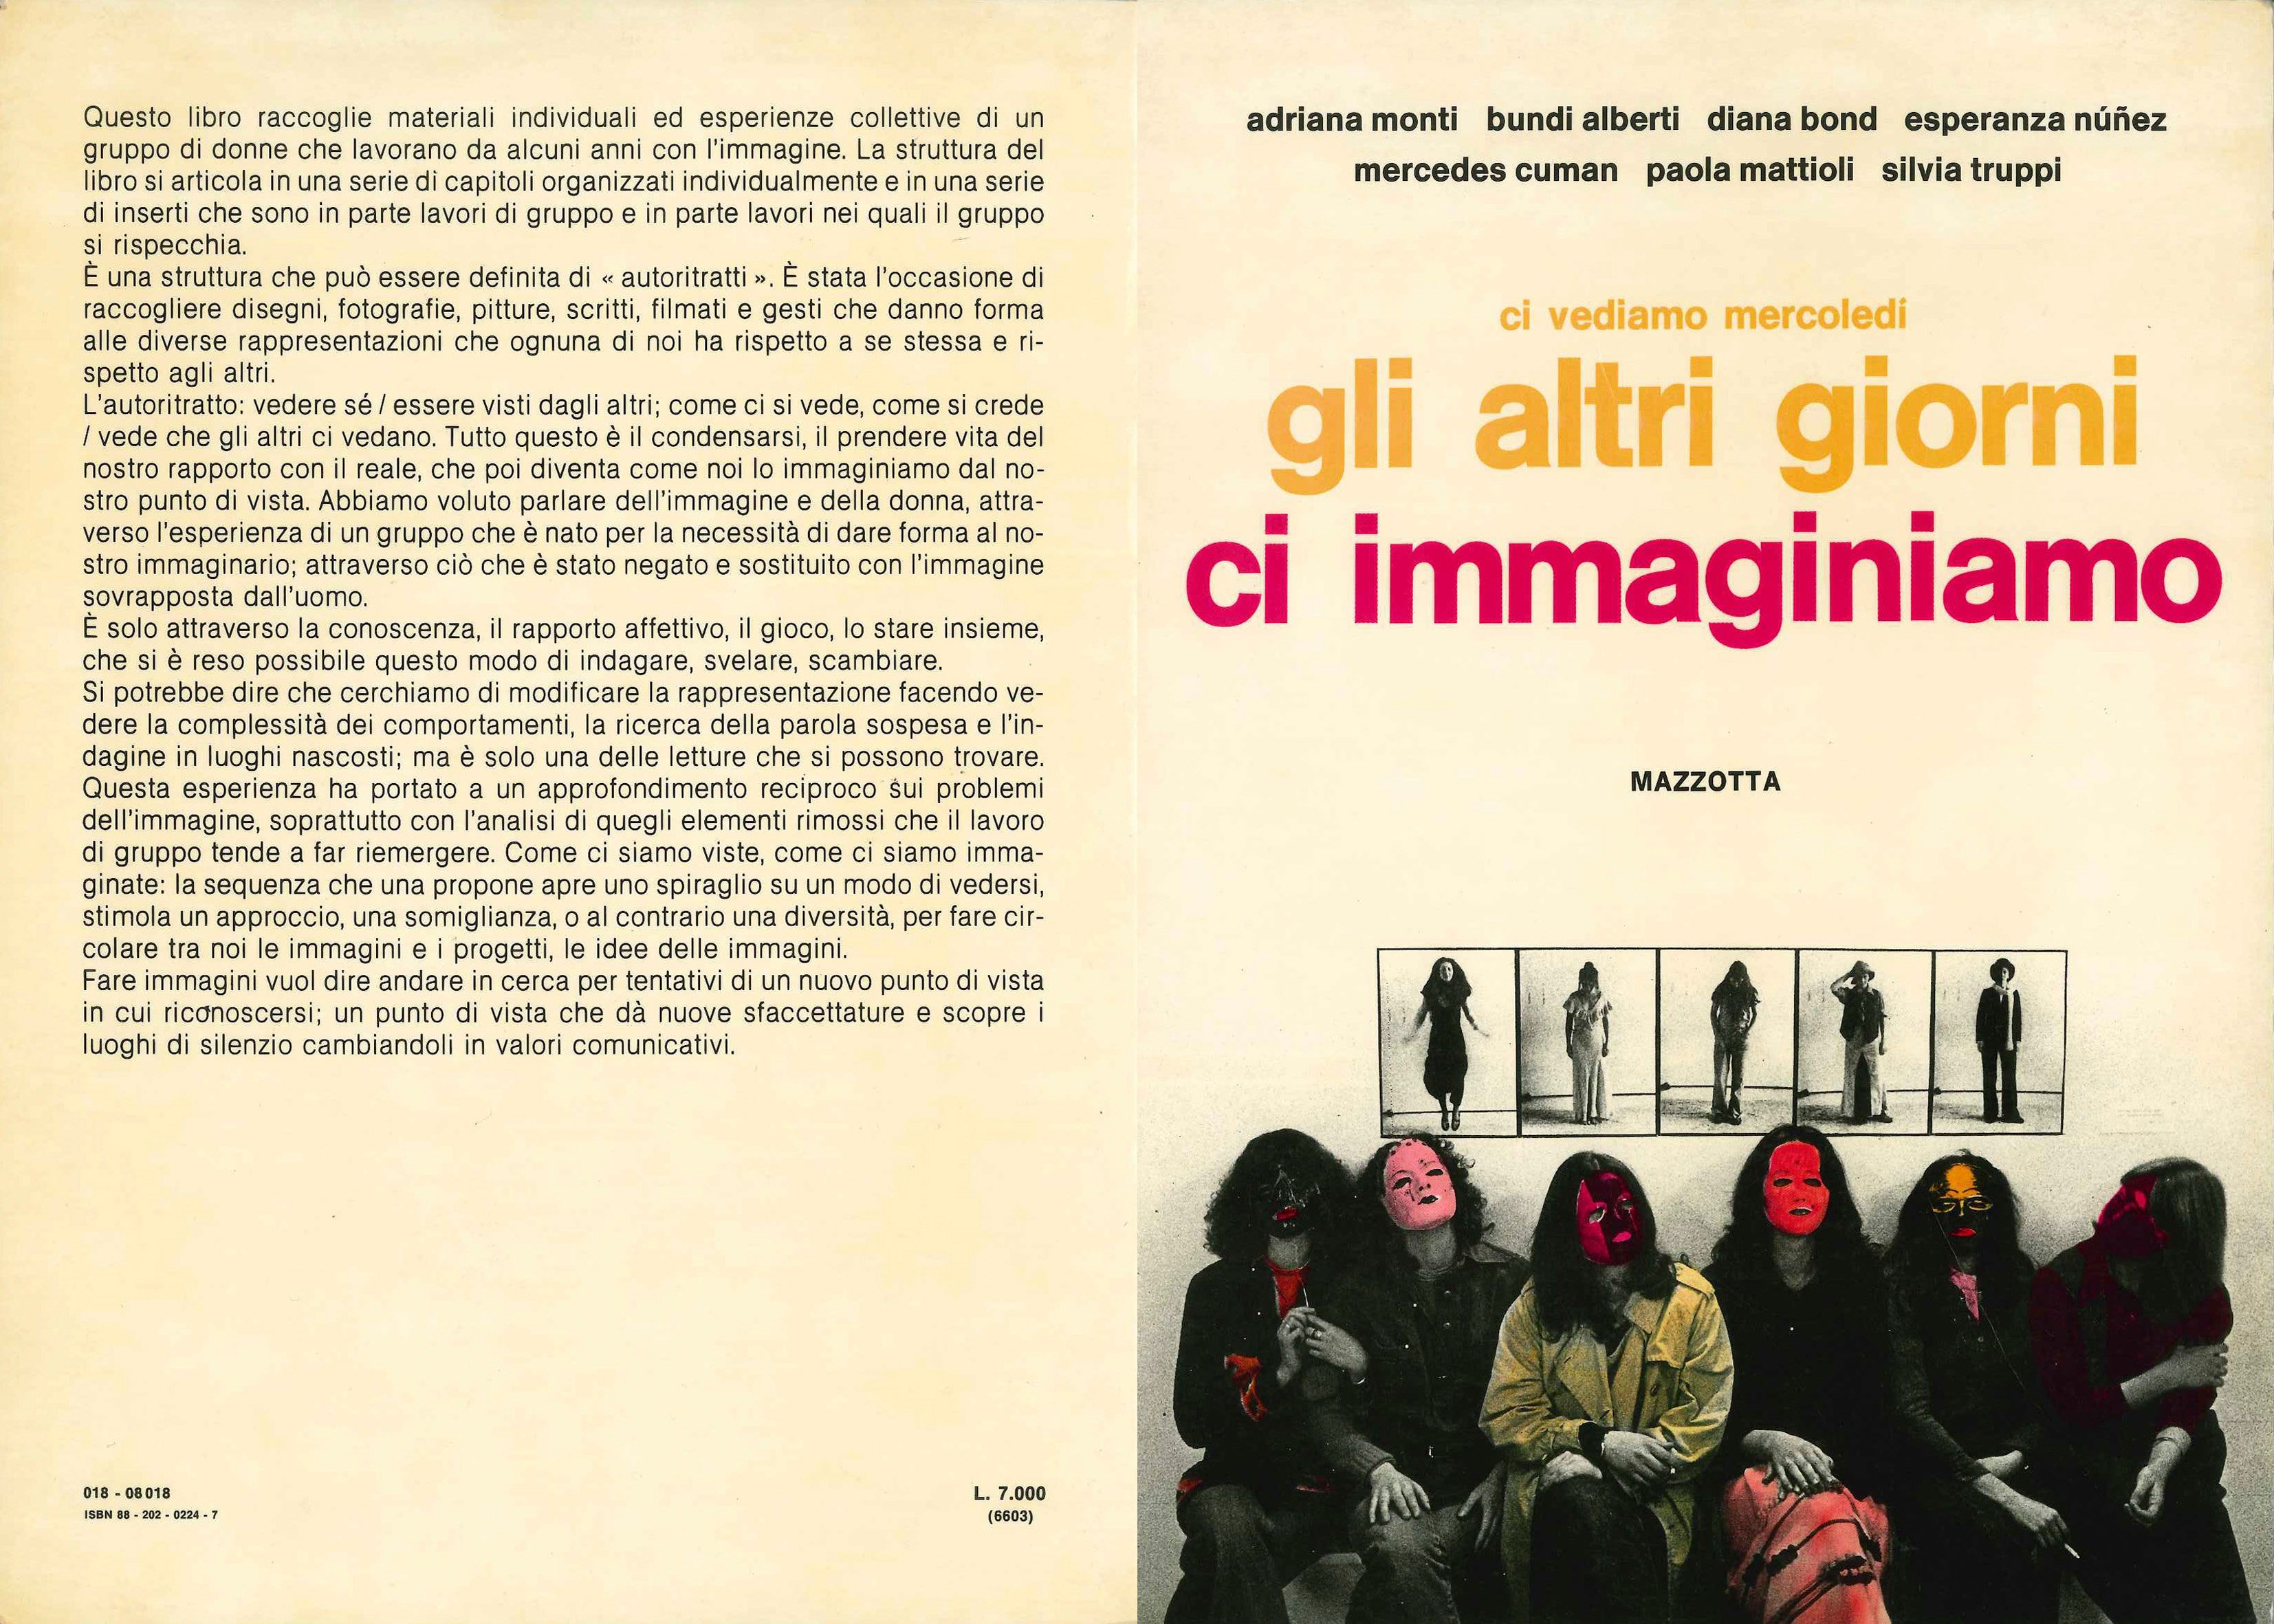 AA.VV., a cura di, Ci vediamo mercoledì. Gli altri giorni ci immaginiamo, Gabriele Mazzotta, Milano, 1978, copertina